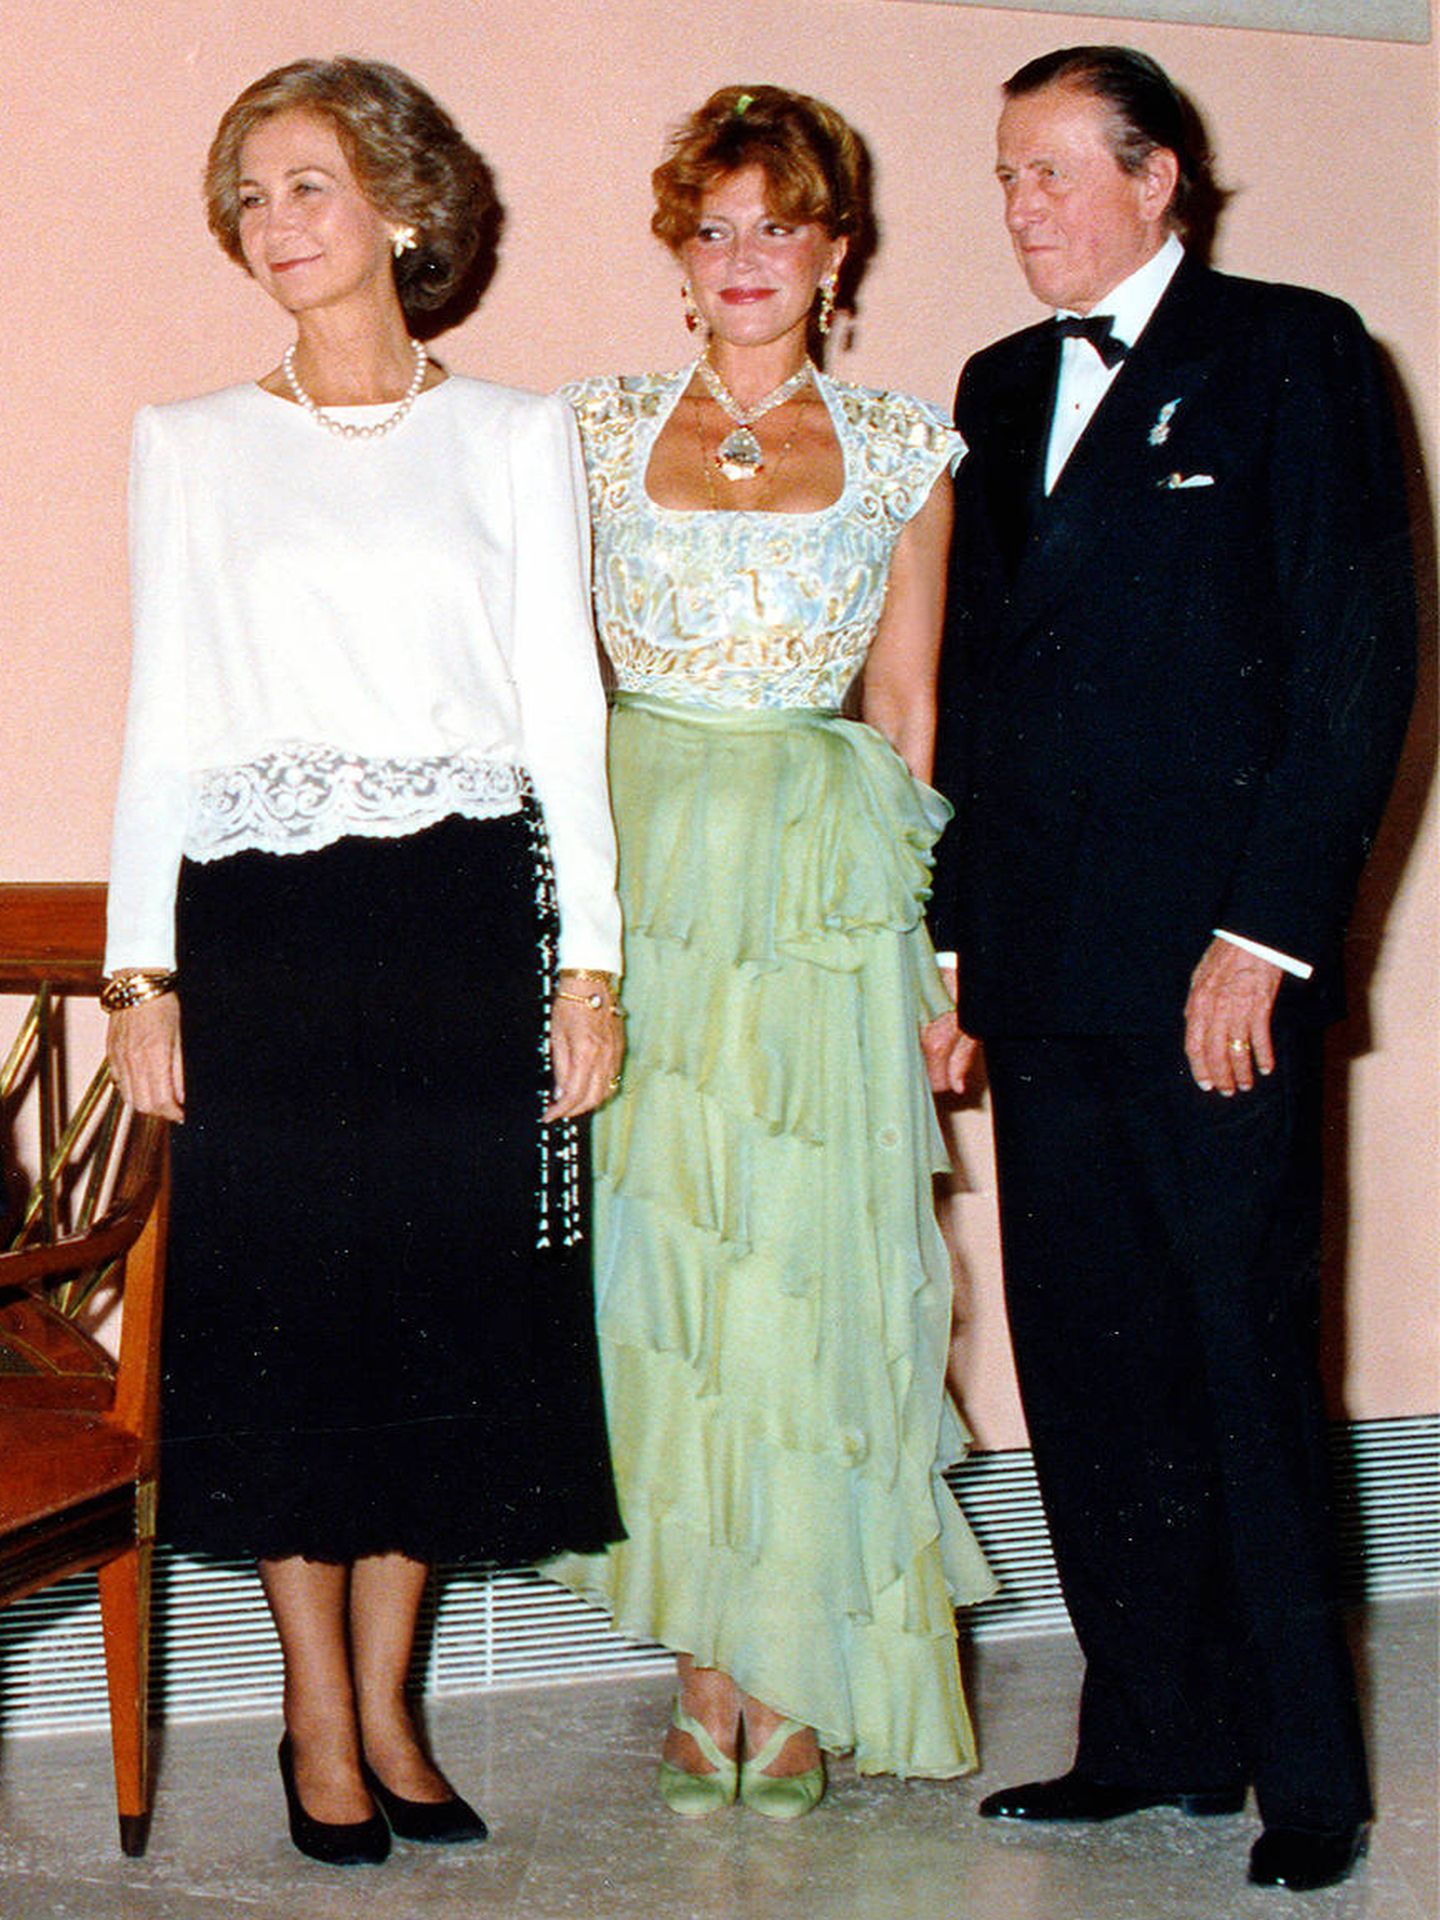 La baronesa llevó este collar con el diamante en la inauguración del Museo Thyssen en 1992. (Archivo fotográfico baronesa Thyssen-Bornemisza)